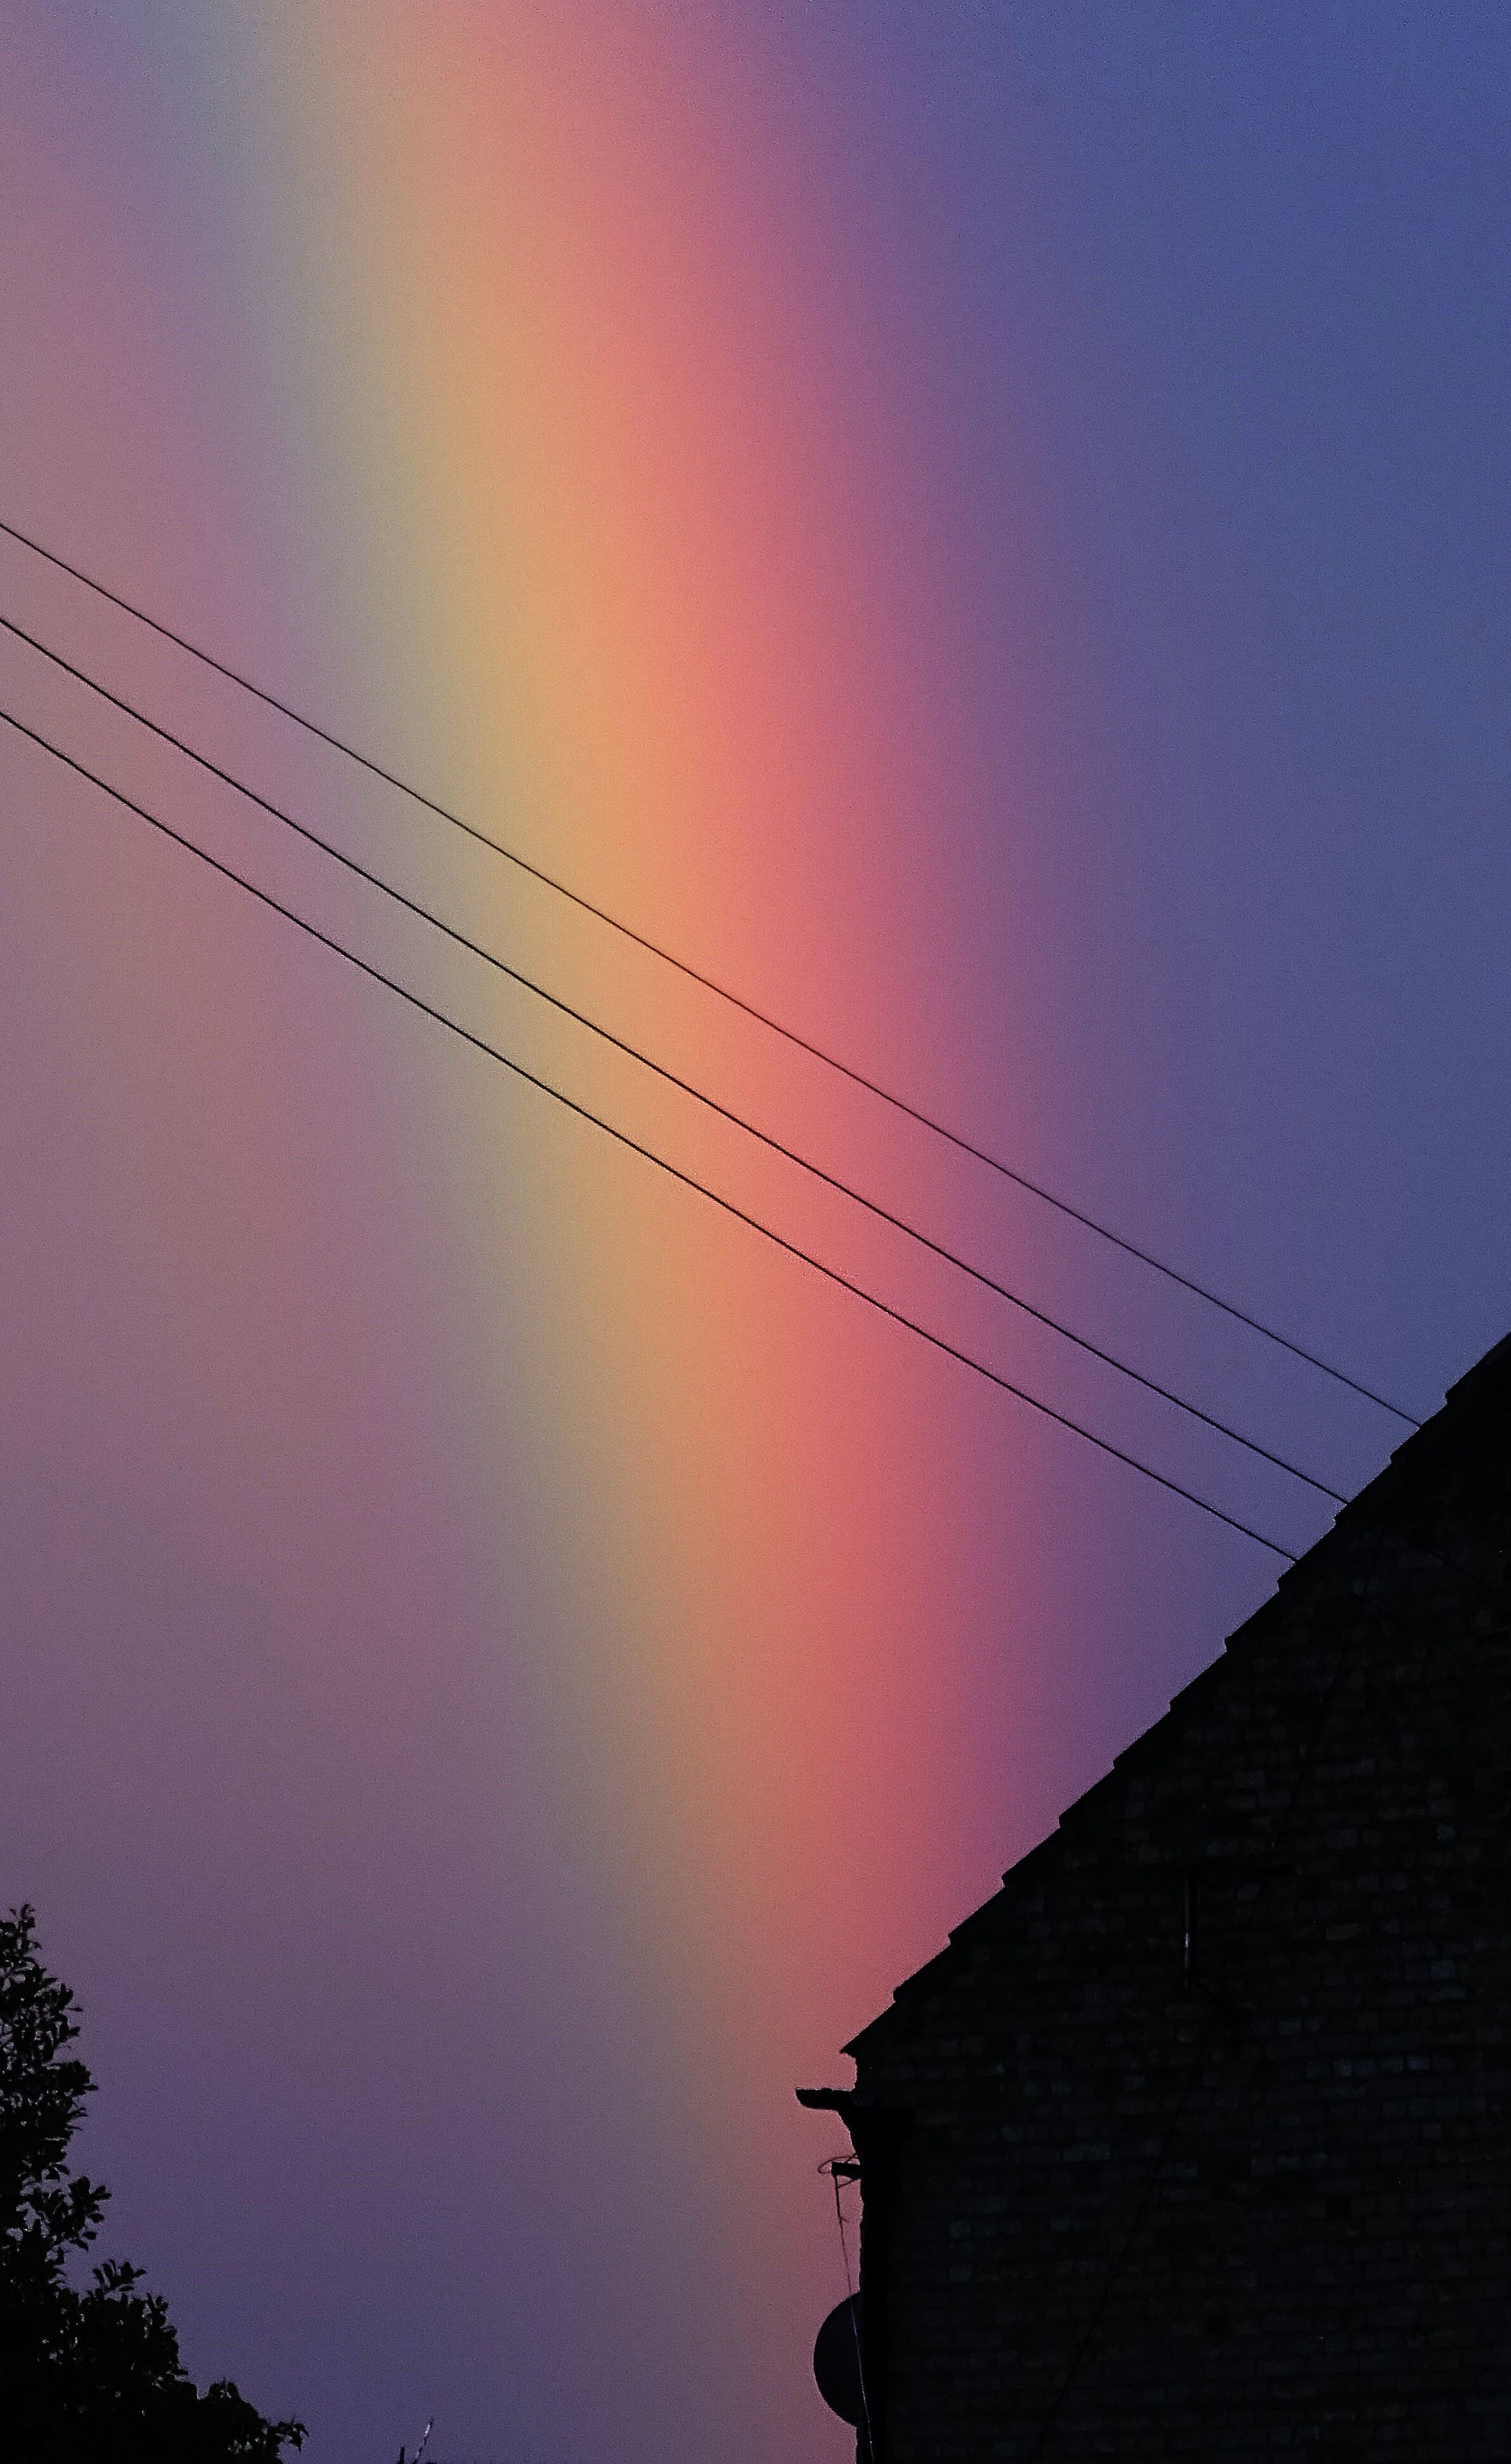 A rainbow is seen in the sky - Rainbows